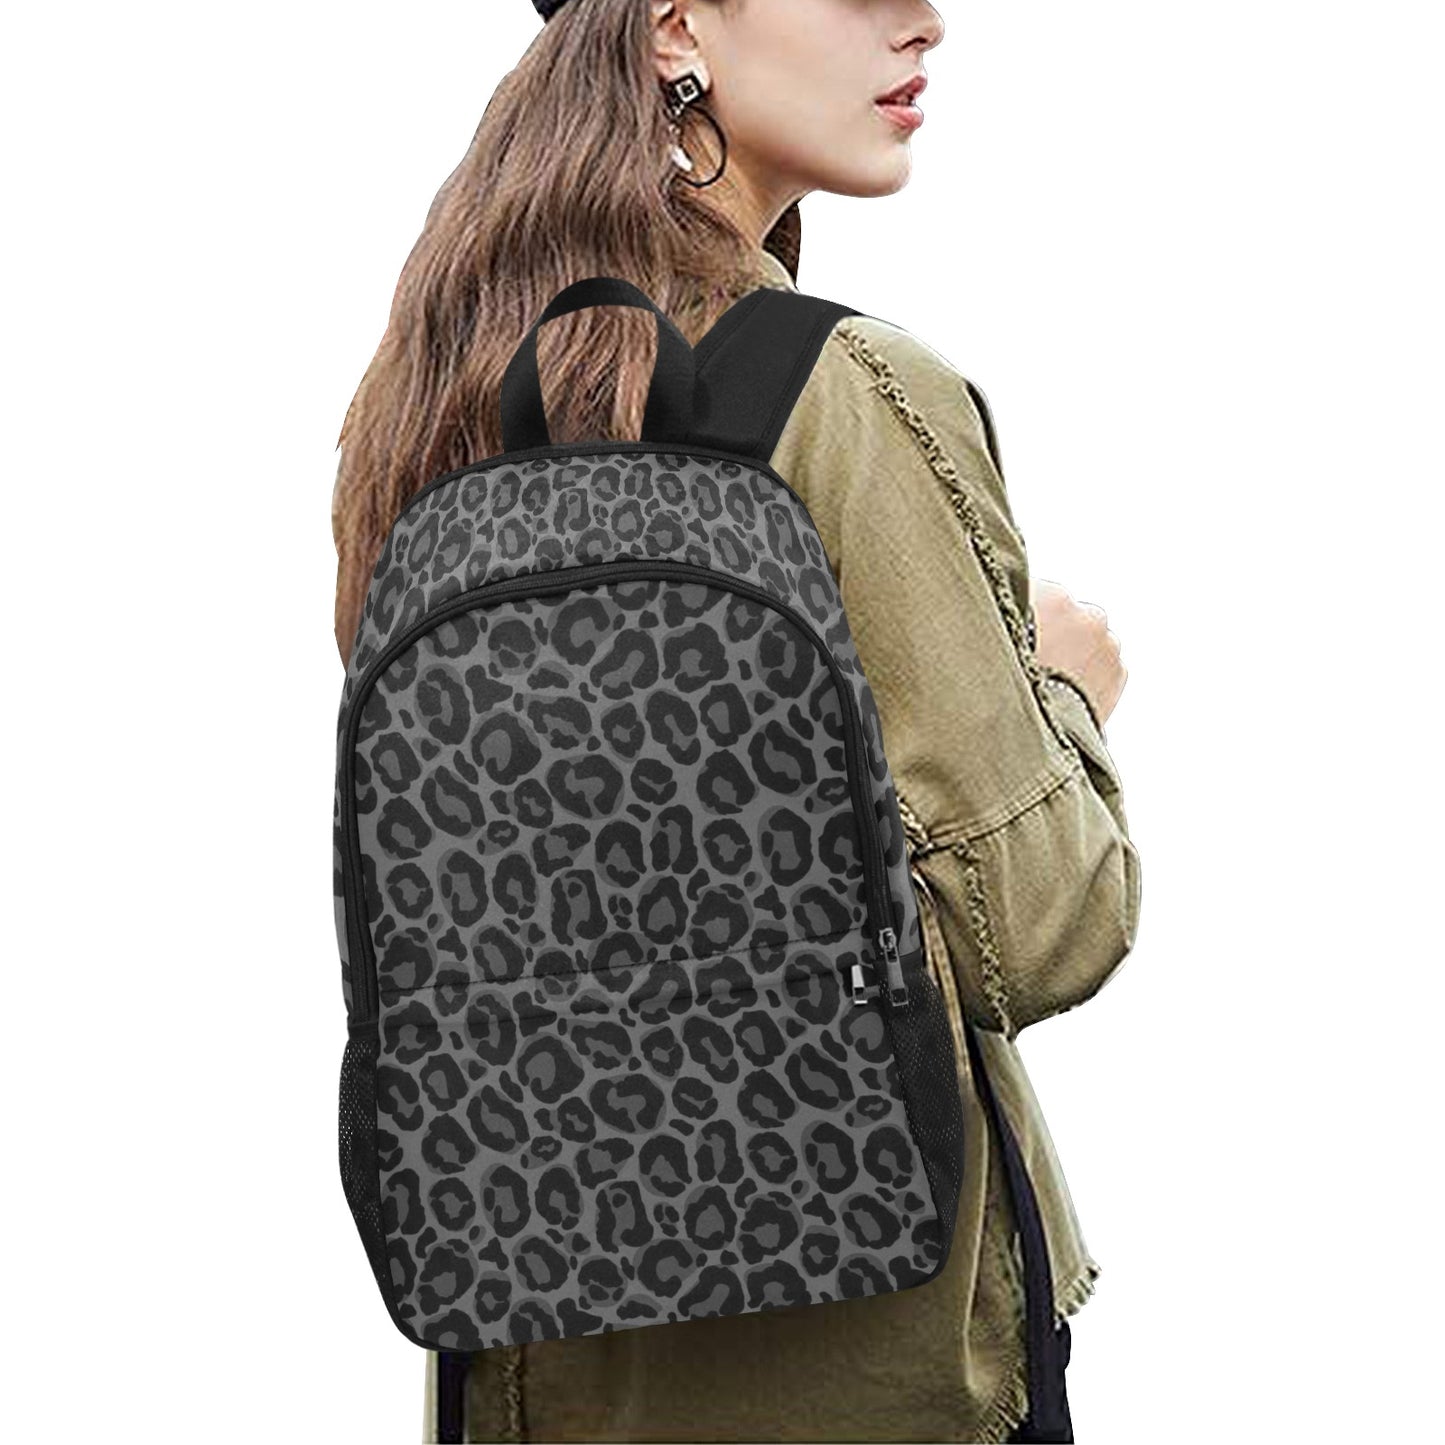 Black Leopard Backpack, Cheetah Animal Print Men Women Kids Gift Him Her School College Waterproof Side Mesh Pockets Aesthetic Bag